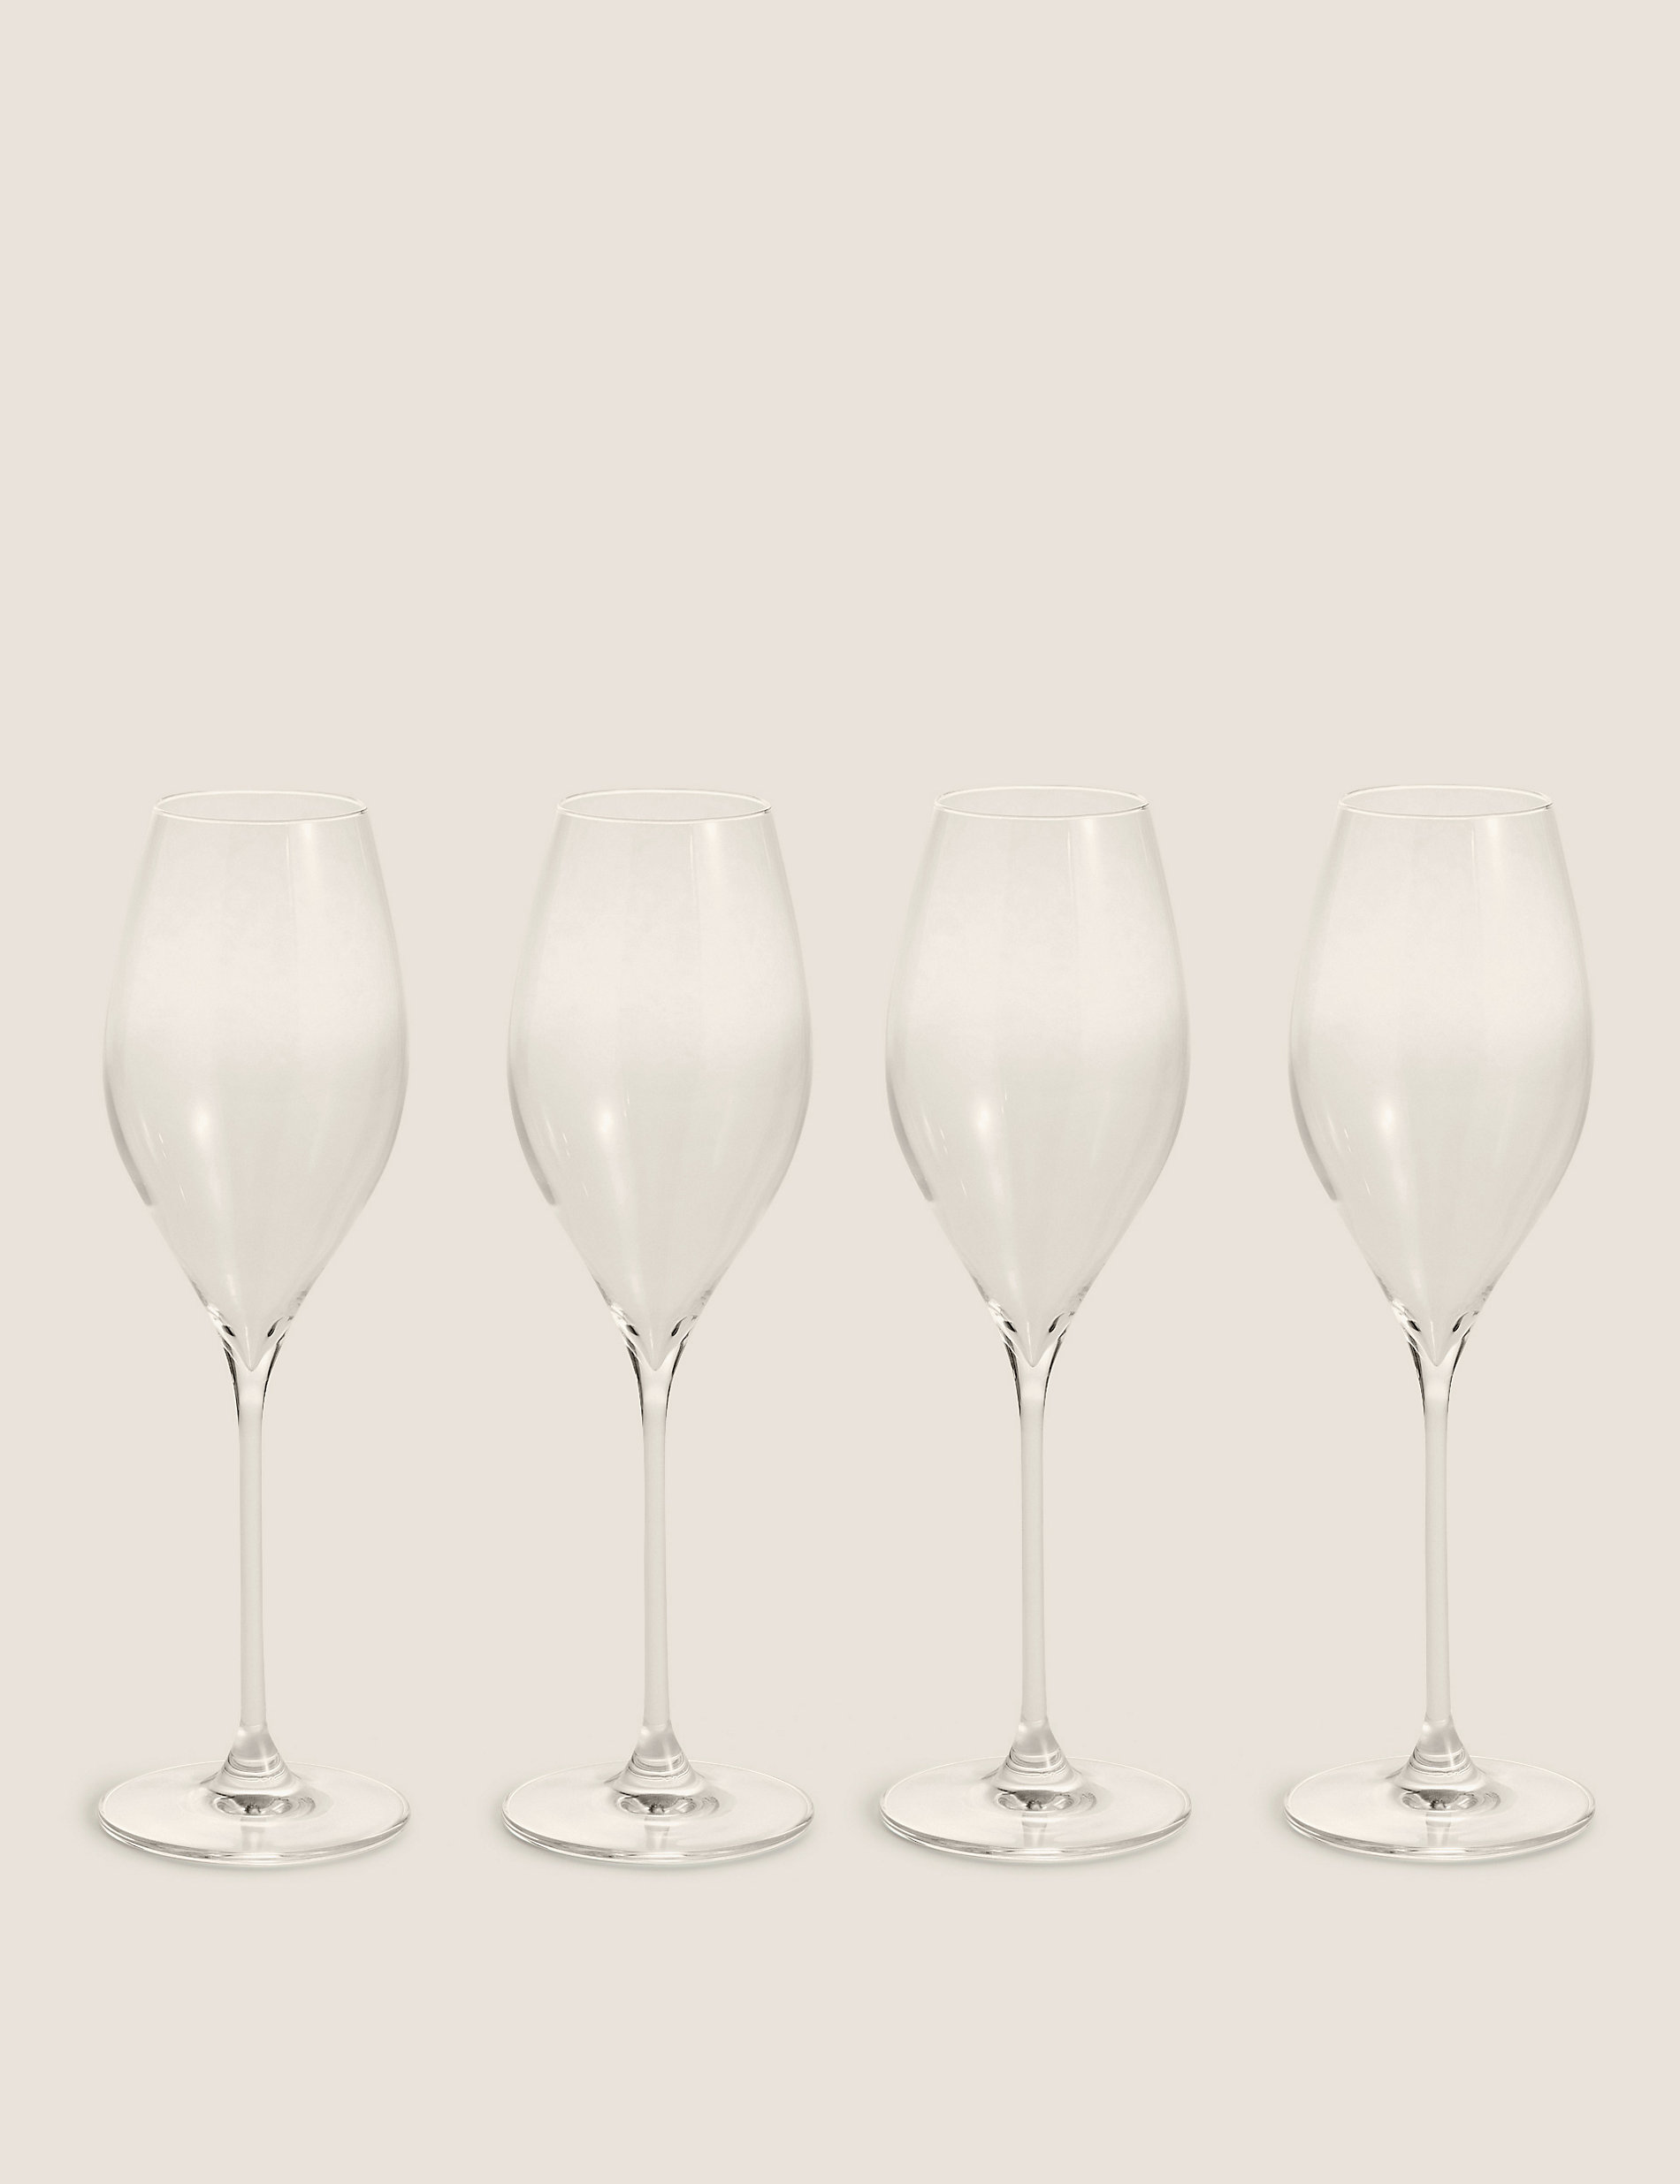 Set of 4 Prosecco Glasses